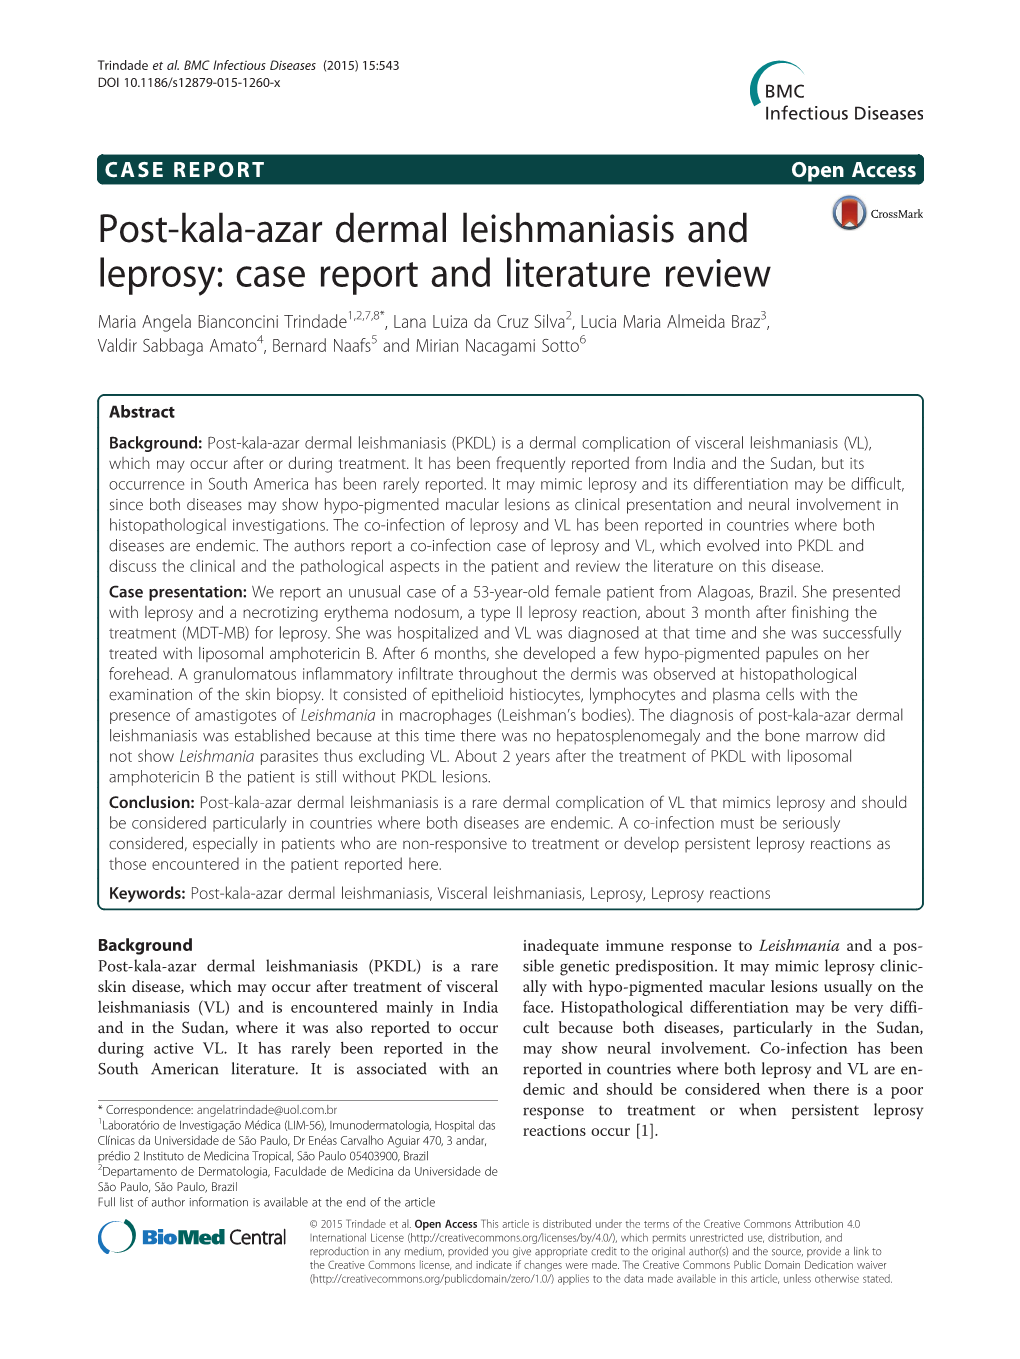 Post-Kala-Azar Dermal Leishmaniasis and Leprosy